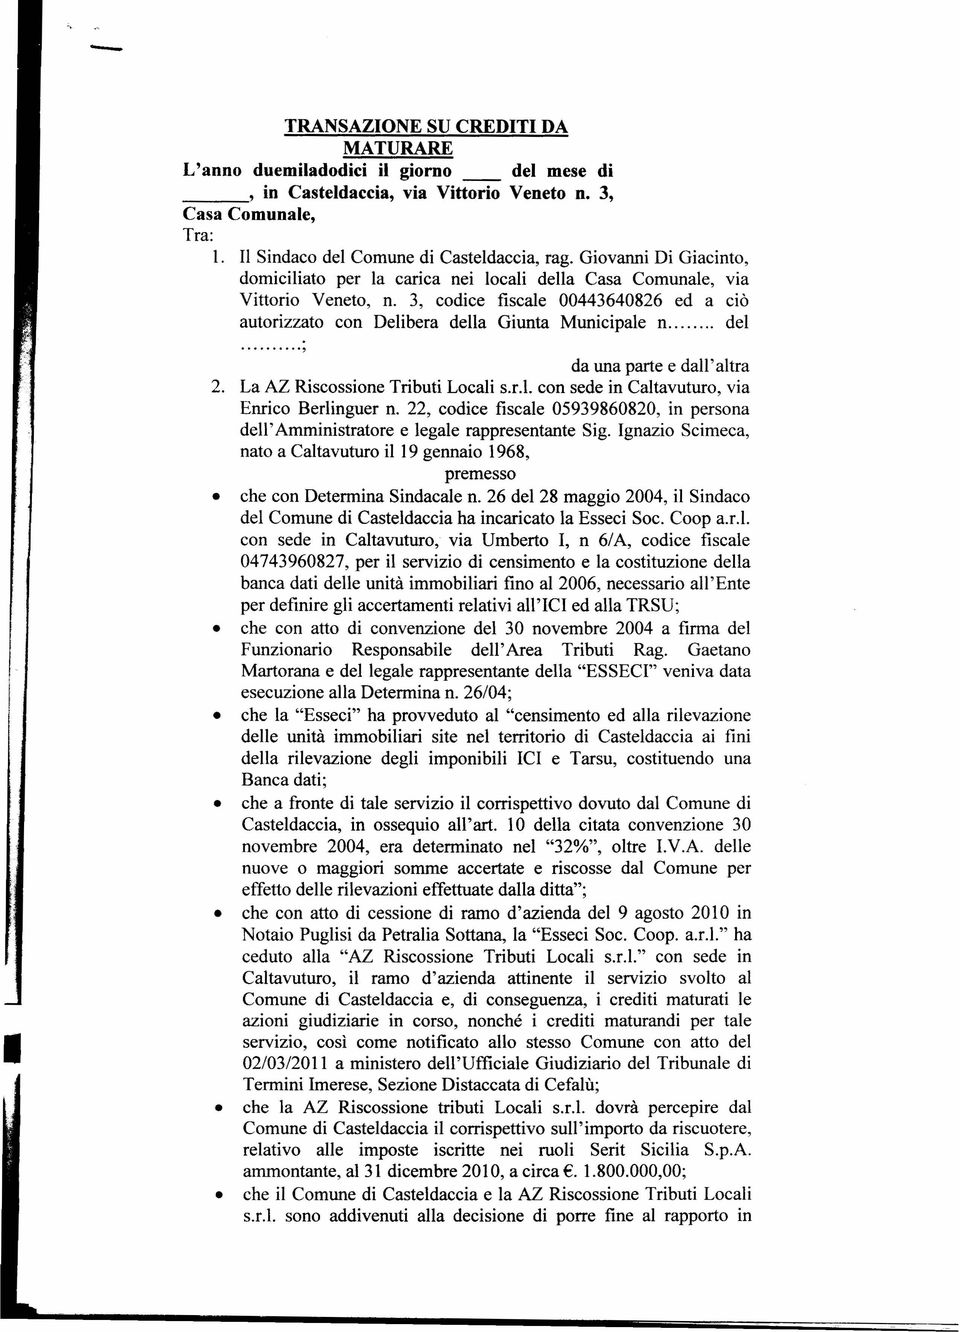 La AZ Riscossione Tributi Locali s.r.l. con sede in Caltavuturo, via Enrico Berlinguer n. 22, codice fiscale 05939860820, in persona dell' Amministratore e legale rappresentante Sig.